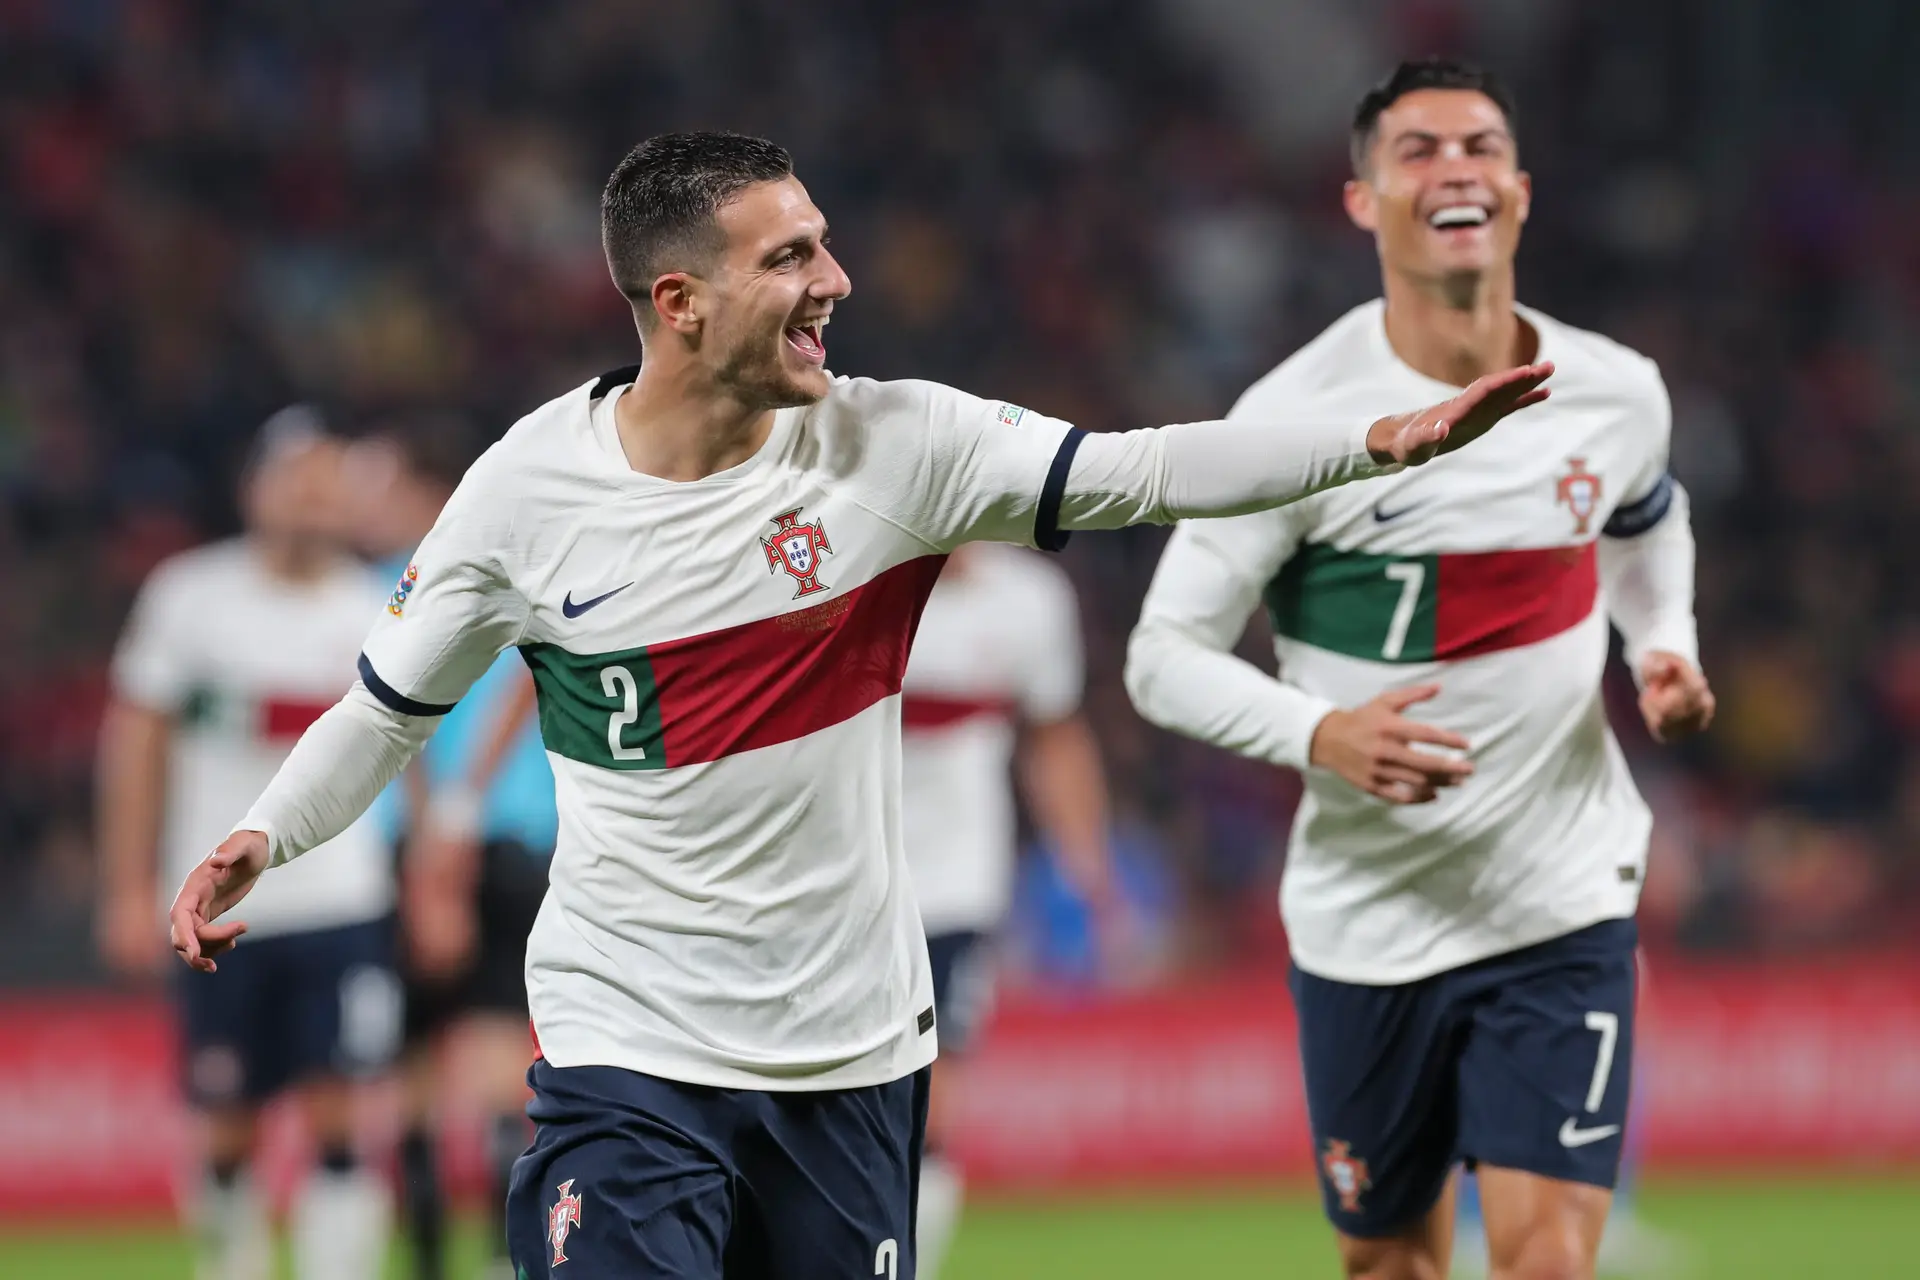 Portugal mantém nono lugar no ranking da FIFA